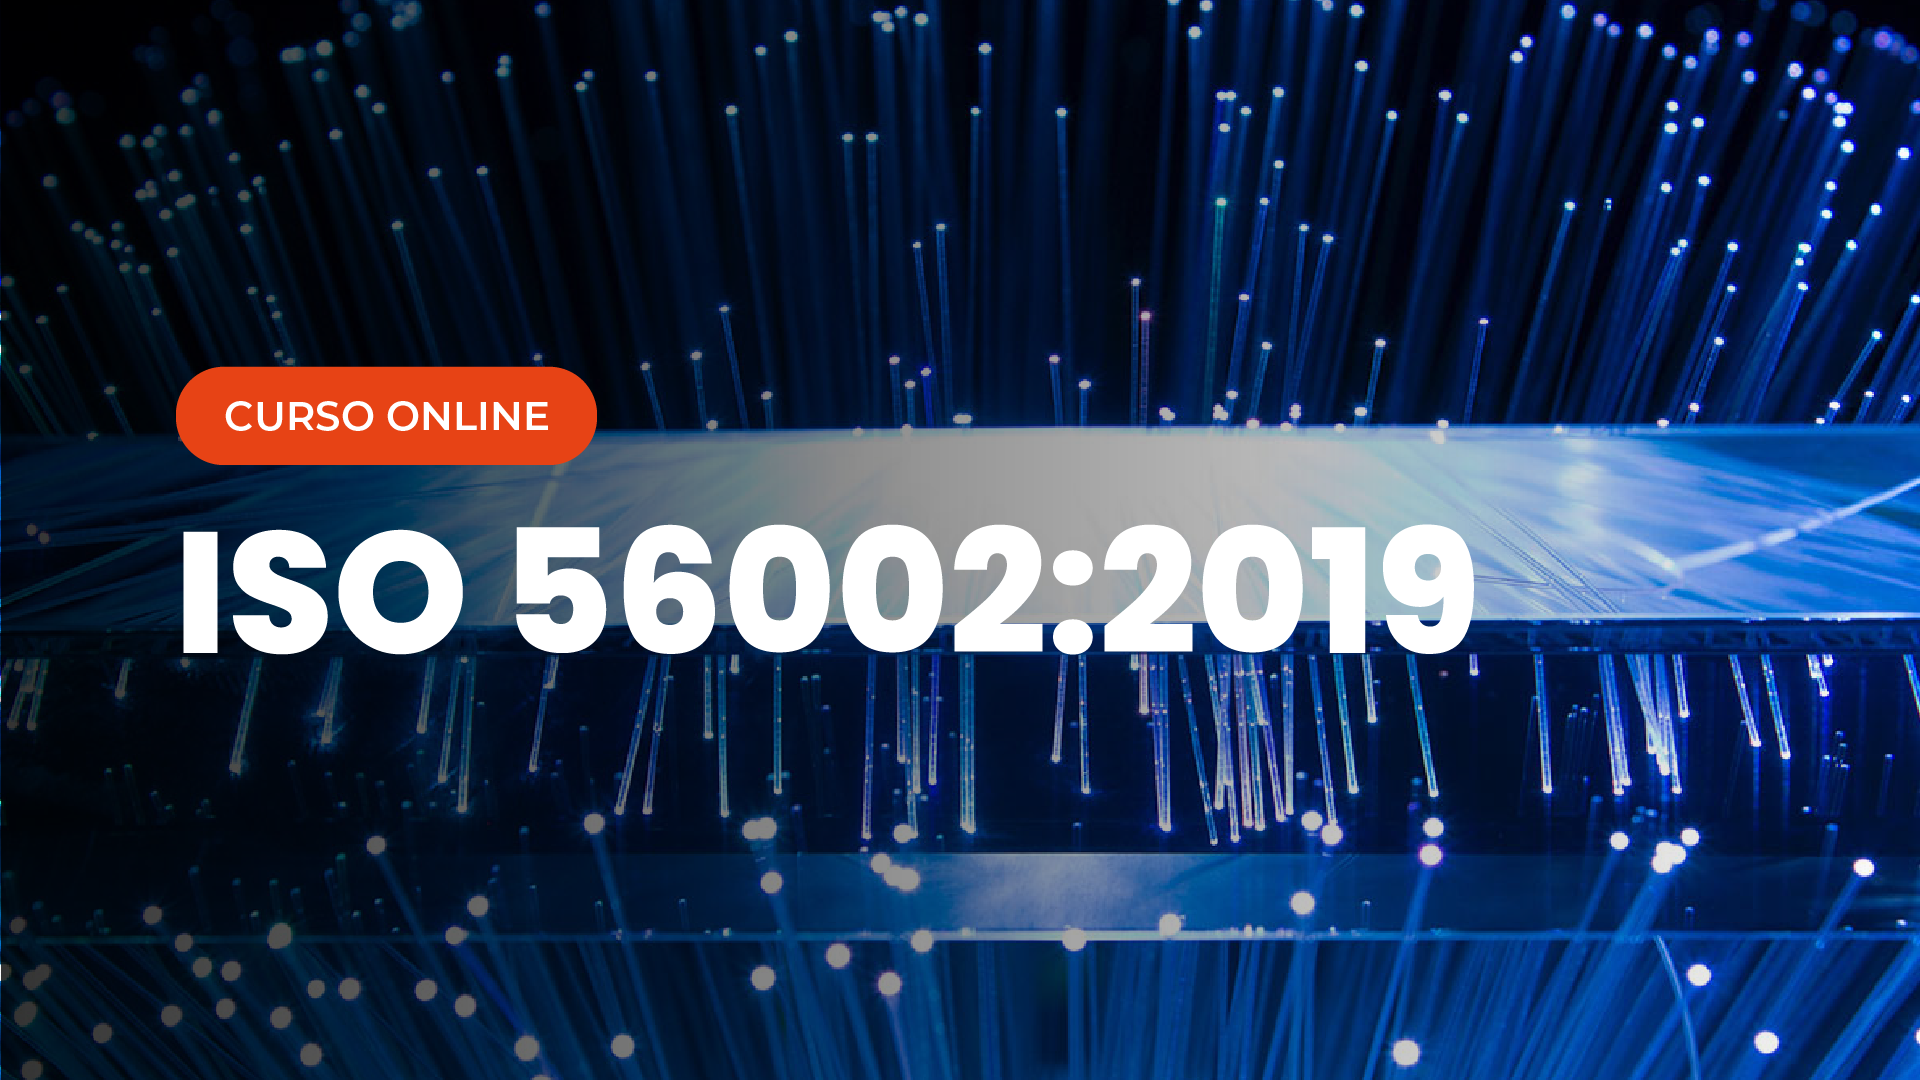 Curso Online de ISO 56002 2019 Sistema de Gesão da Inovação